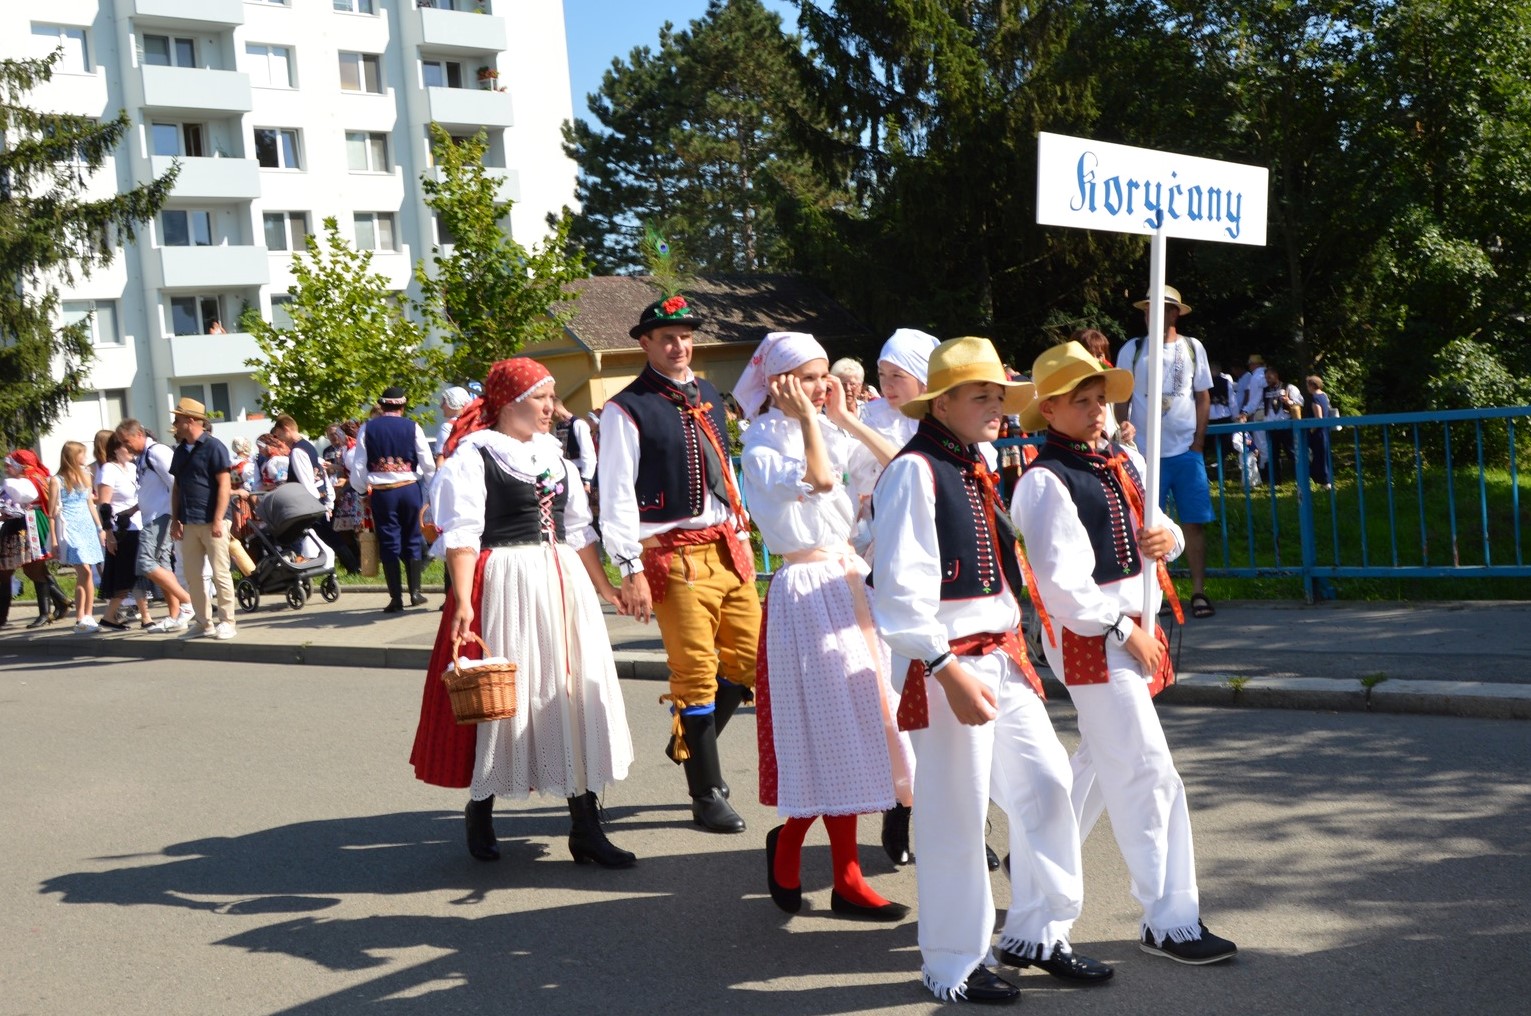 Na Slováckém roku Koryčany představily nový kroj